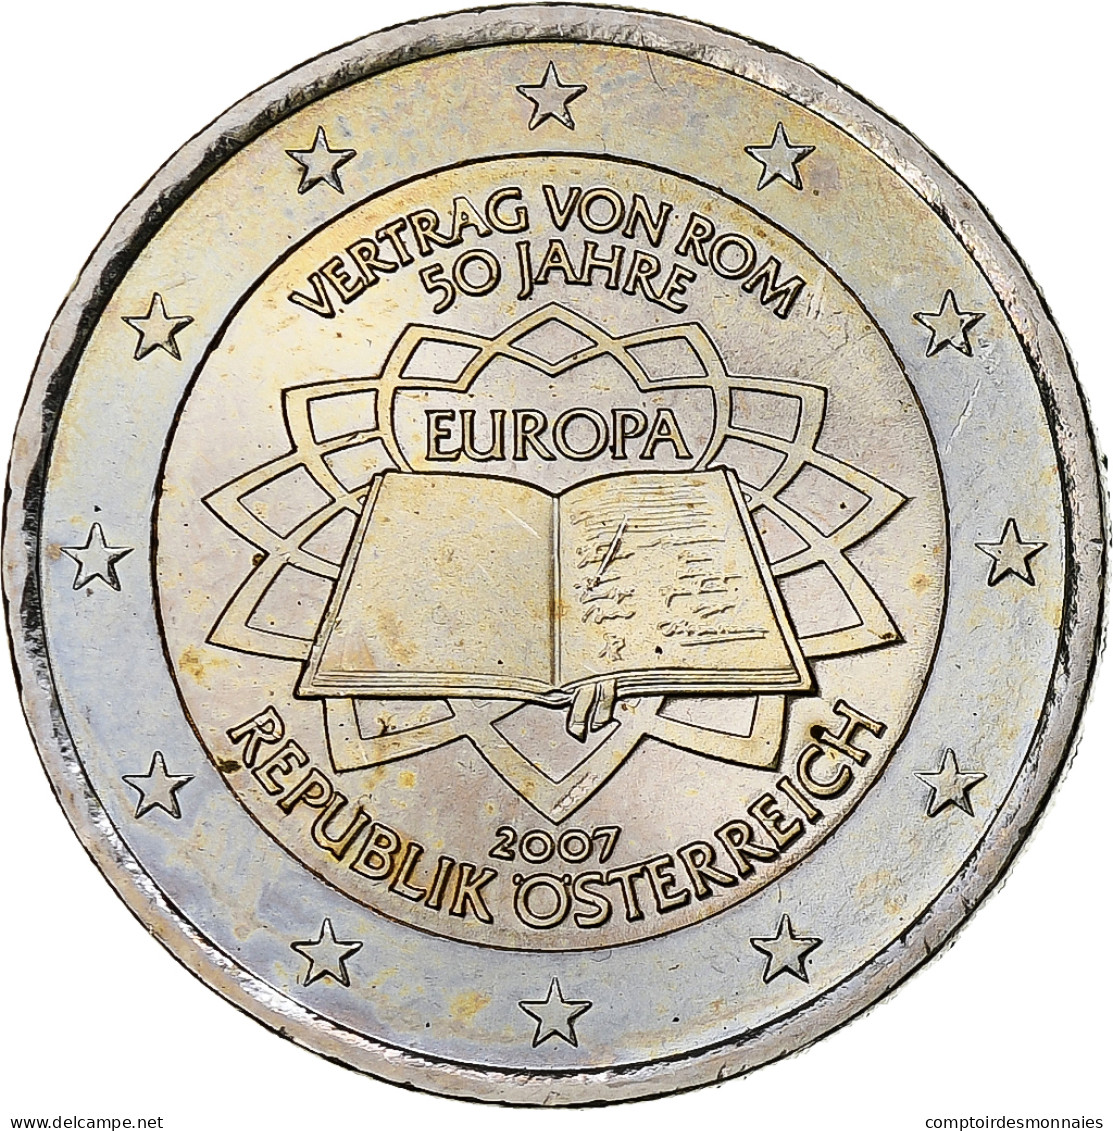 Autriche, 2 Euro, Traité De Rome 50 Ans, 2007, Vienna, SPL, Bimétallique - Autriche